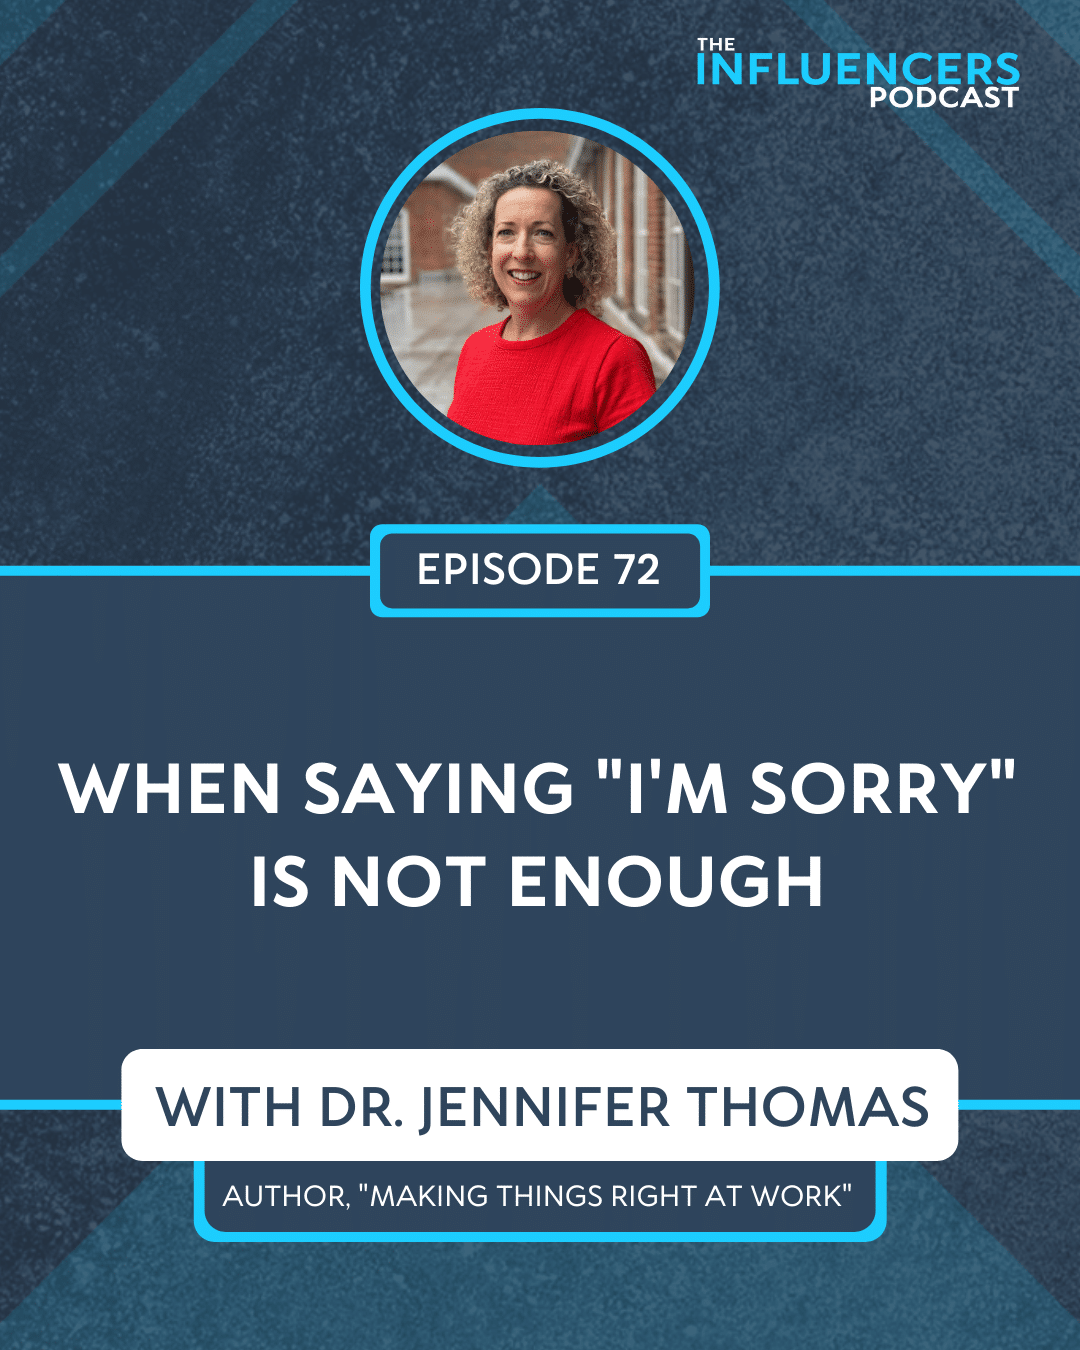 Episode 72 with Dr. Jennifer Thomas.